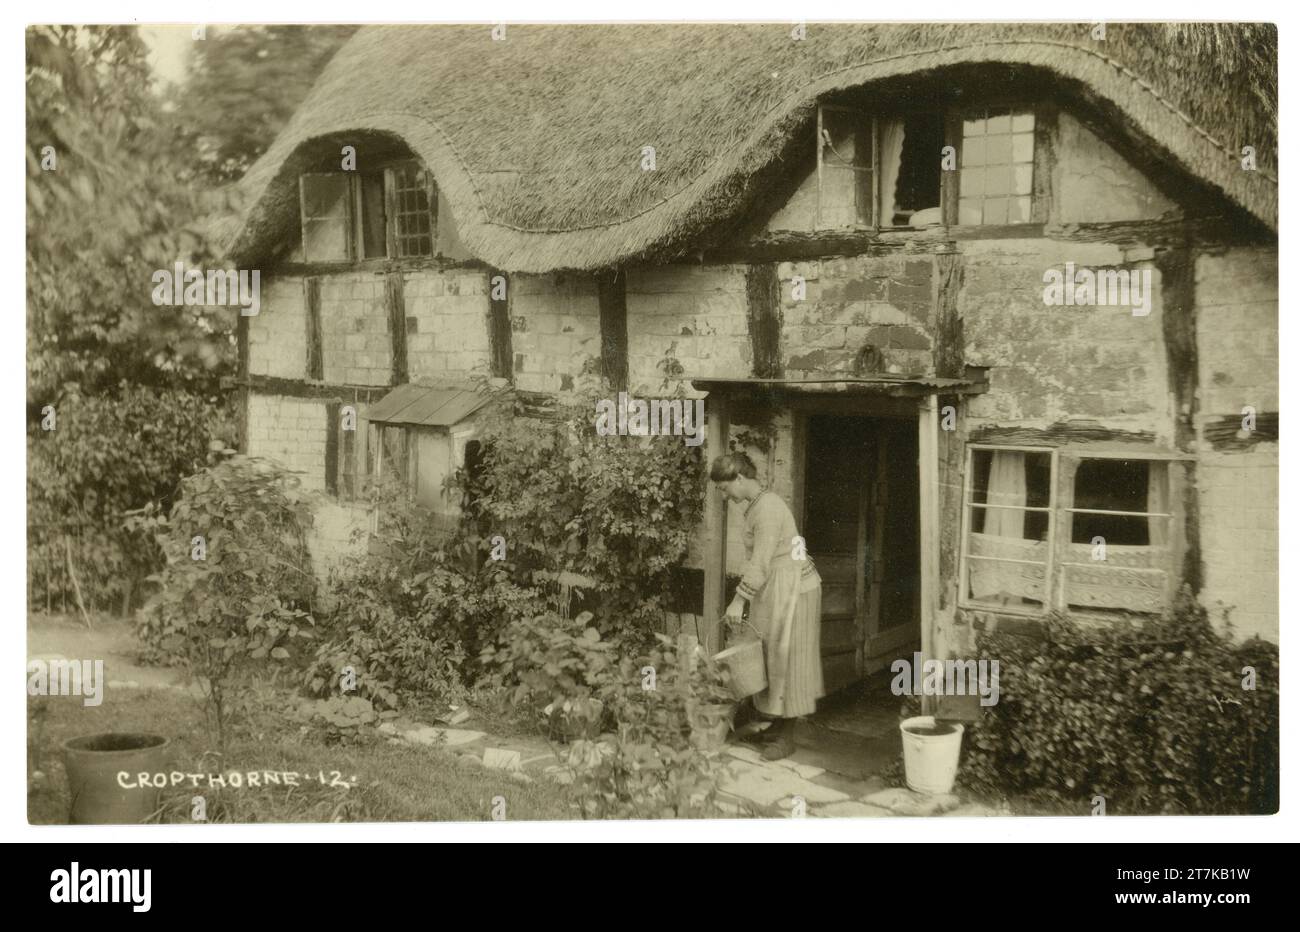 Cartolina originale del 1900 di una signora con secchio/secchio all'esterno del suo affascinante cottage inglese con tetto in paglia in legno, architettura vernacolare, risalente al periodo medievale, Cropthorne, Worcestershire. Inghilterra, Regno Unito, circa 1917 Foto Stock